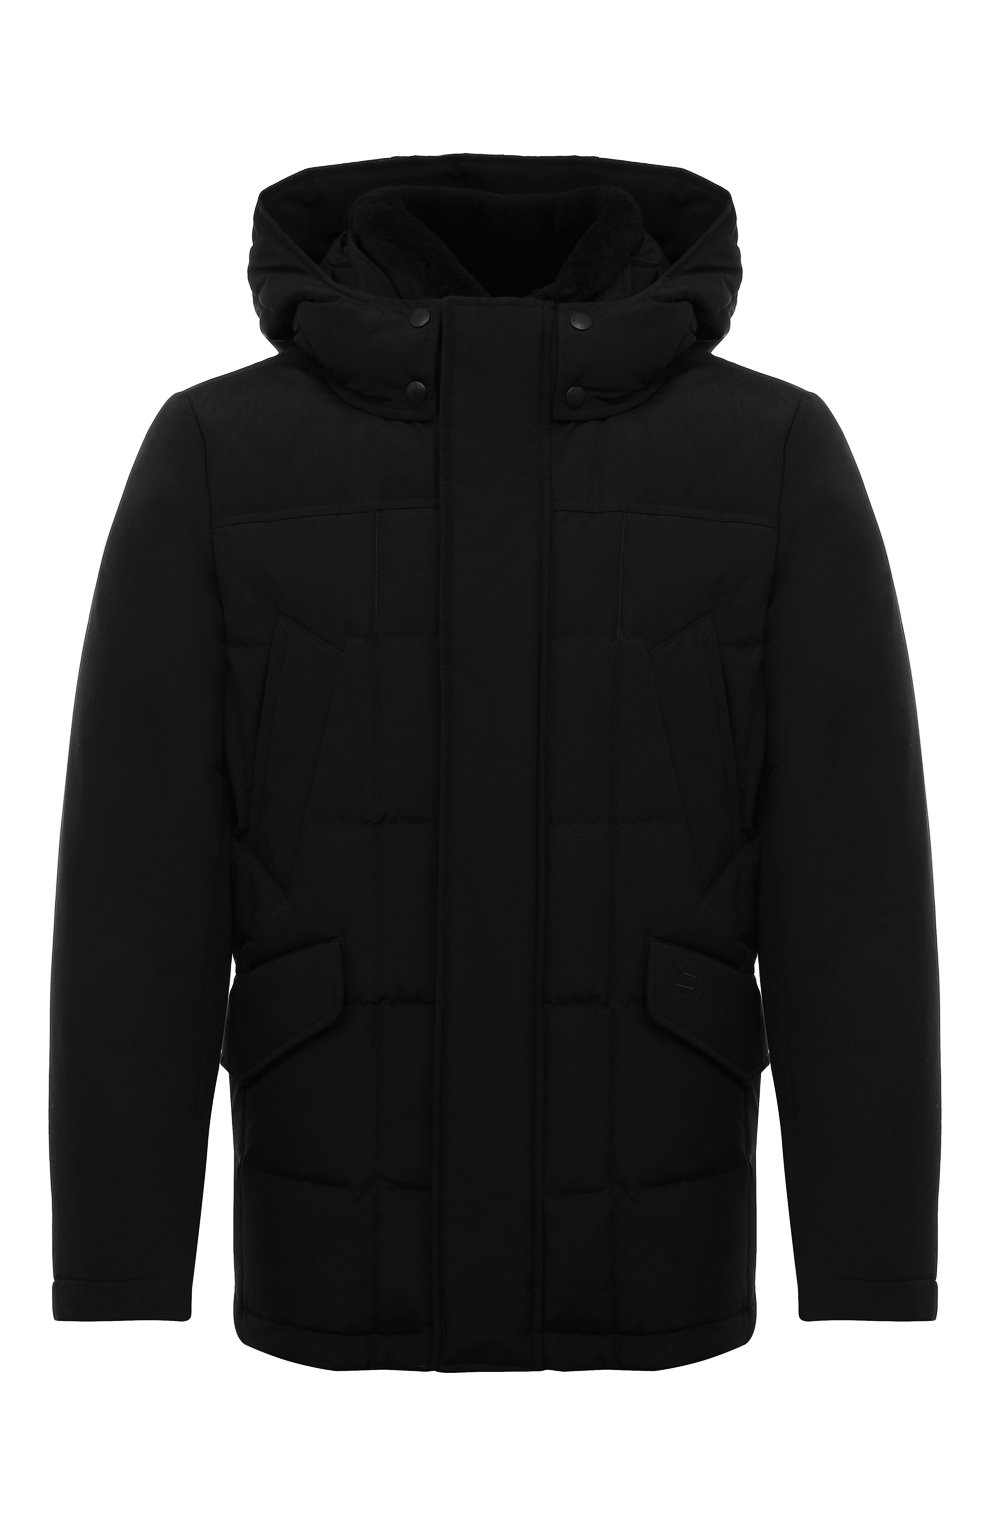 Мужская пуховая куртка WOOLRICH черного цвета, арт. CFW00U0621MR/UT0001 | Фото 1 (Кросс-КТ: Куртка; Рукава: Длинные; Материал внешний: Синтетический материал, Хлопок; Мужское Кросс-КТ: утепленные куртки; Материал подклада: Синтетический материал; Длина (верхняя одежда): Короткие; Материал утеплителя: Пух и перо; Стили: Кэжуэл)